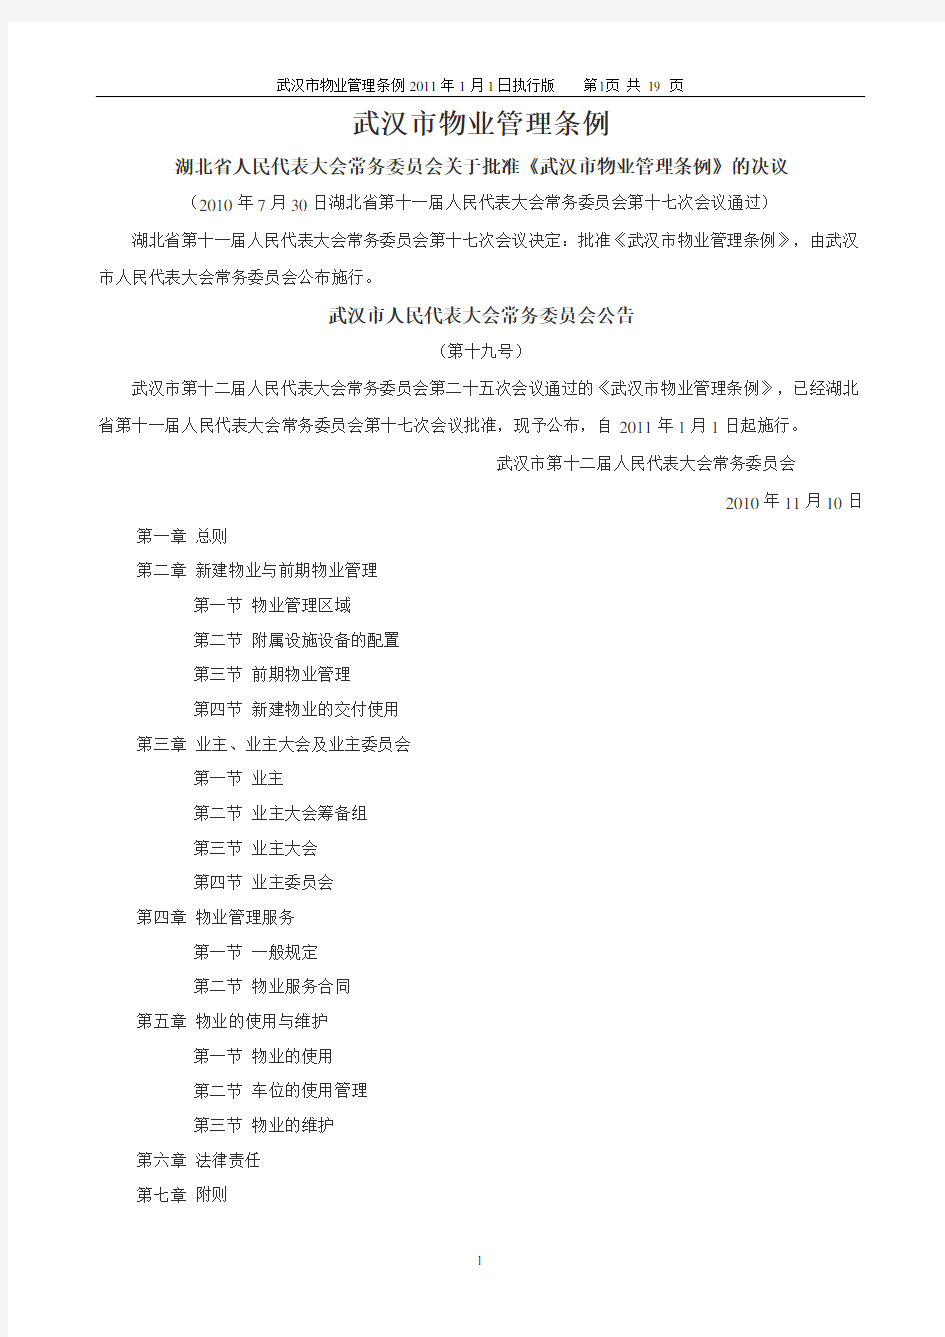 武汉市物业管理条例2011年1月1日执行版